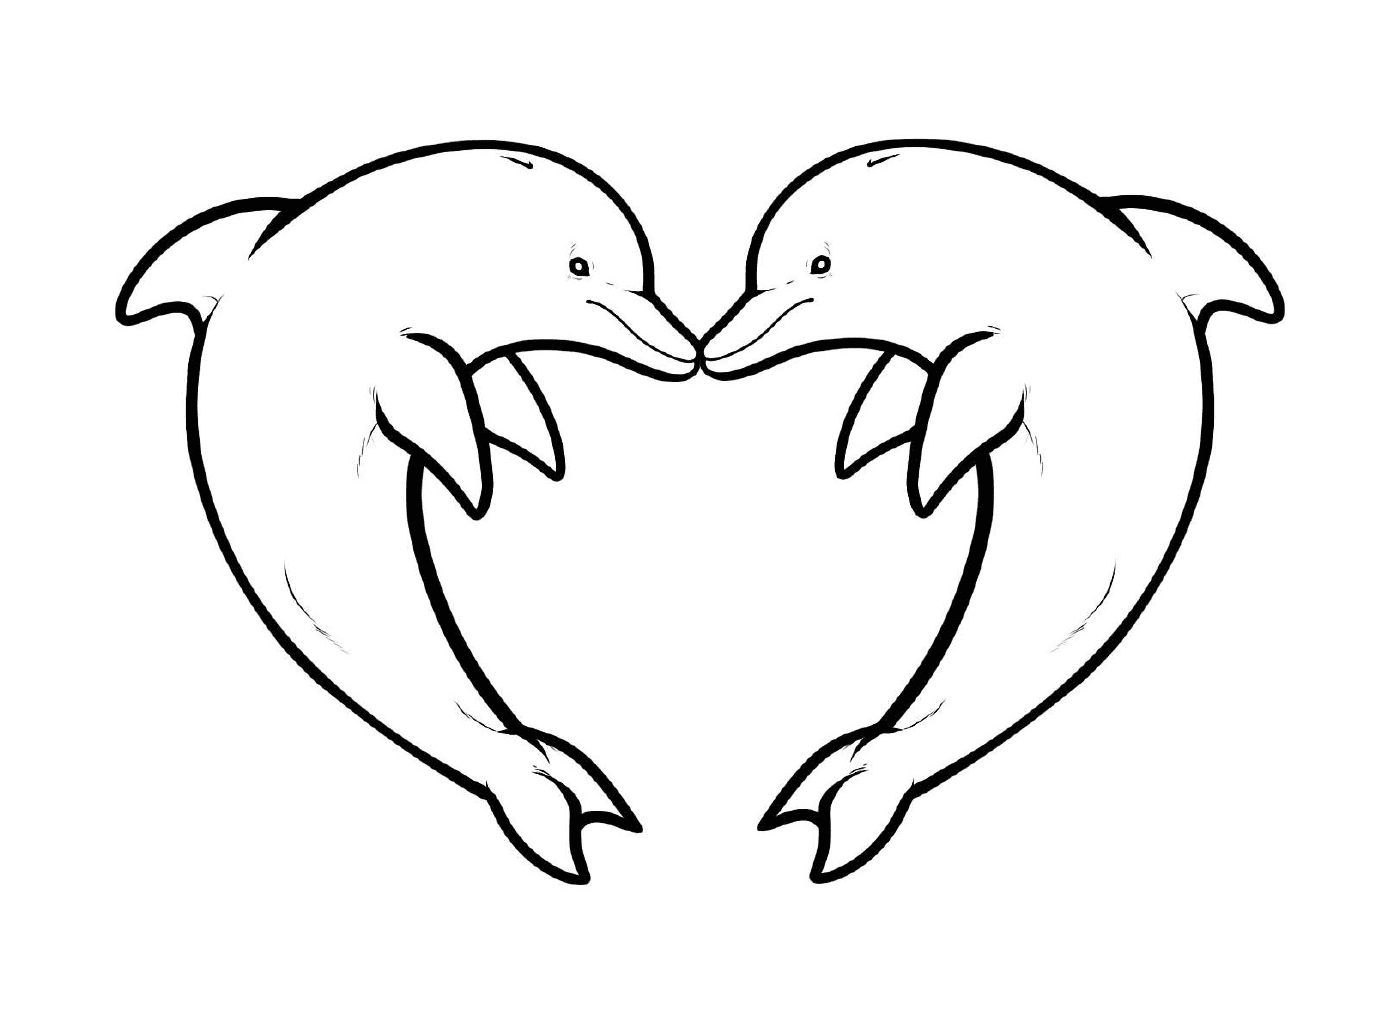  Zwei Delphine bilden ein Herz 